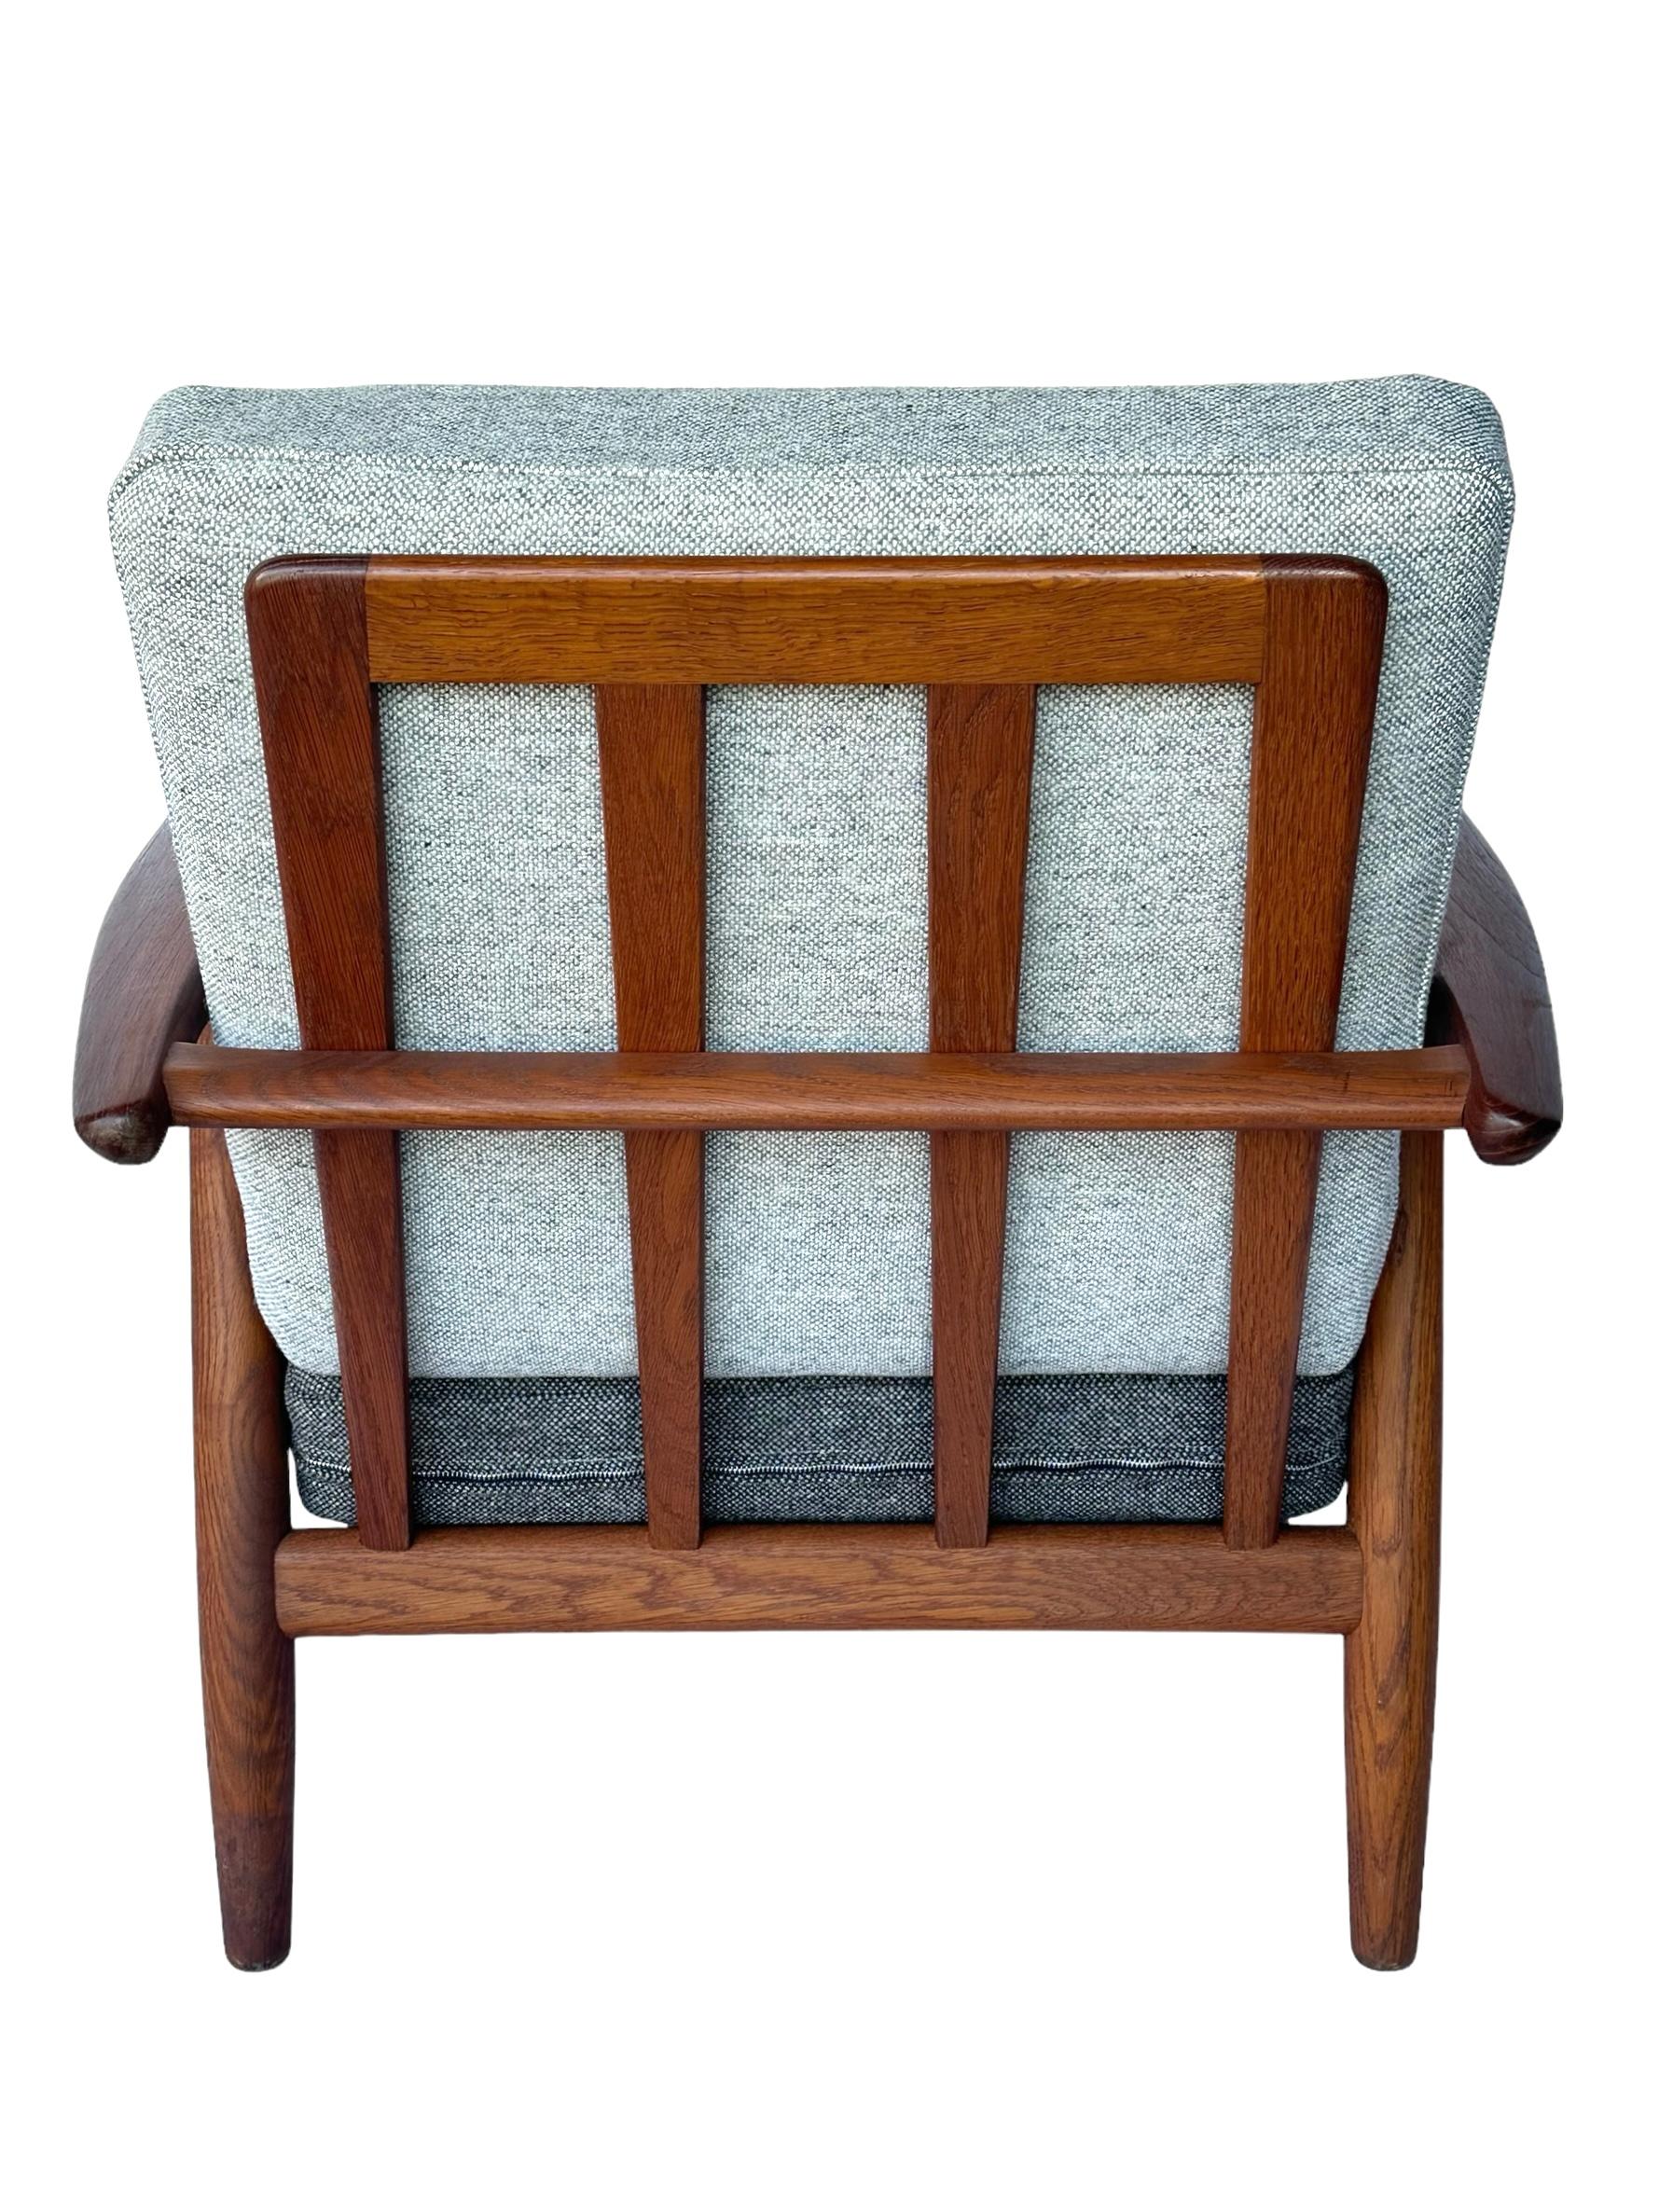 Hans J. Wegner Cigar Lounge Chair in Teak with New Maharam Upholstery For Sale 4